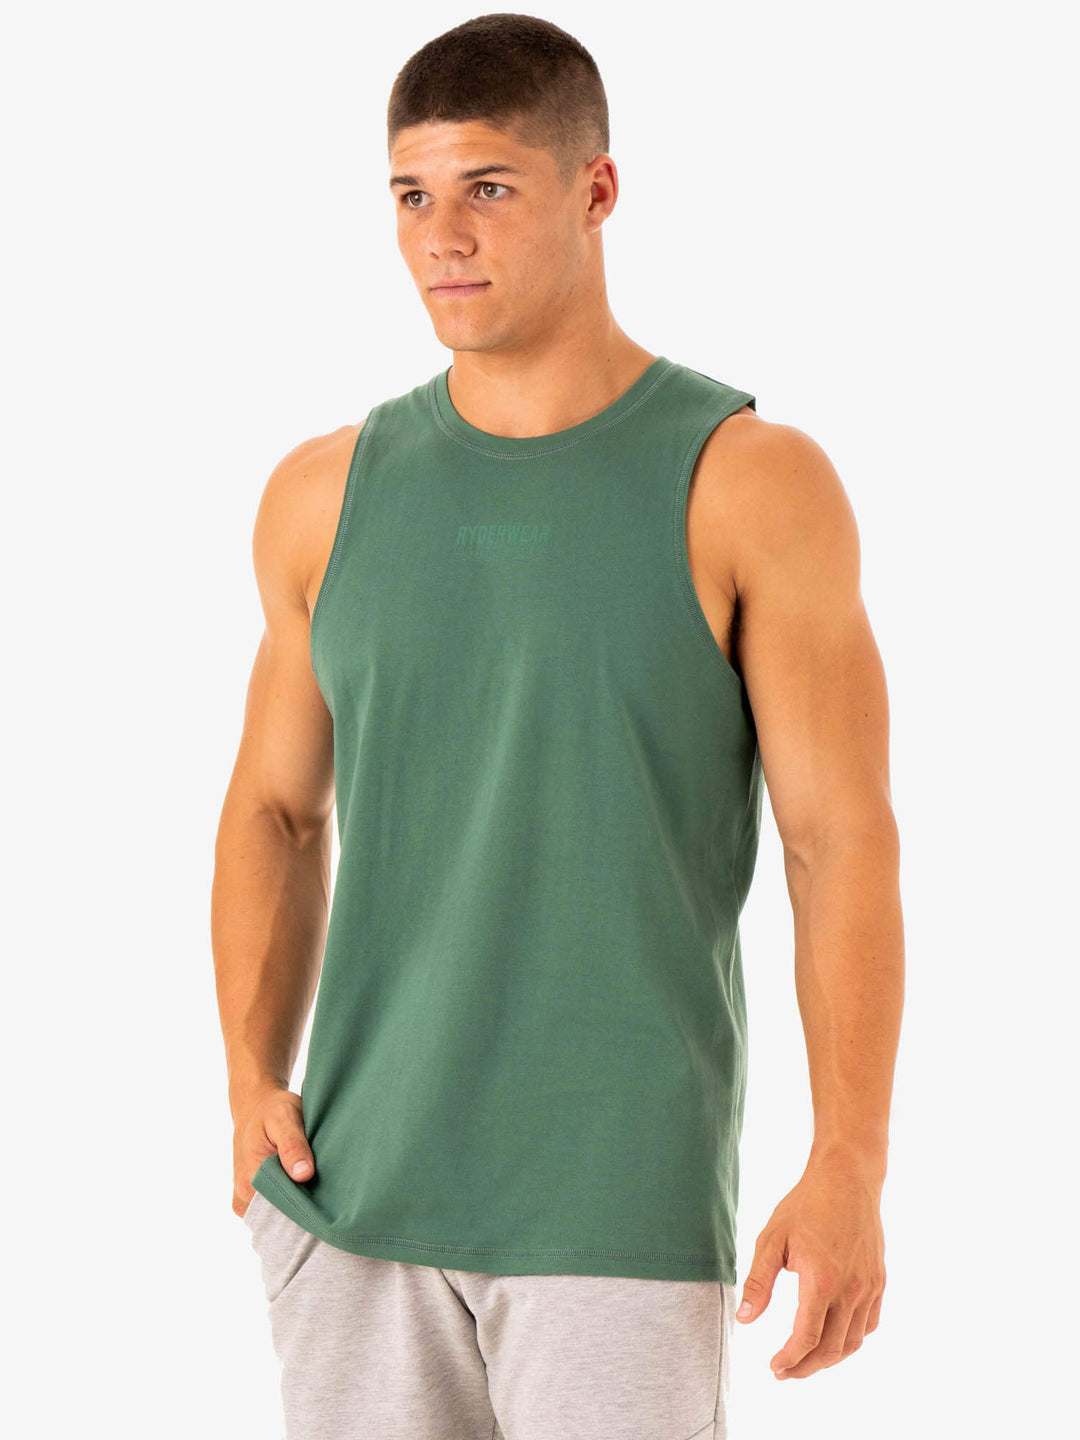 Limitless Baller Tank - Forest Green Clothing Ryderwear 